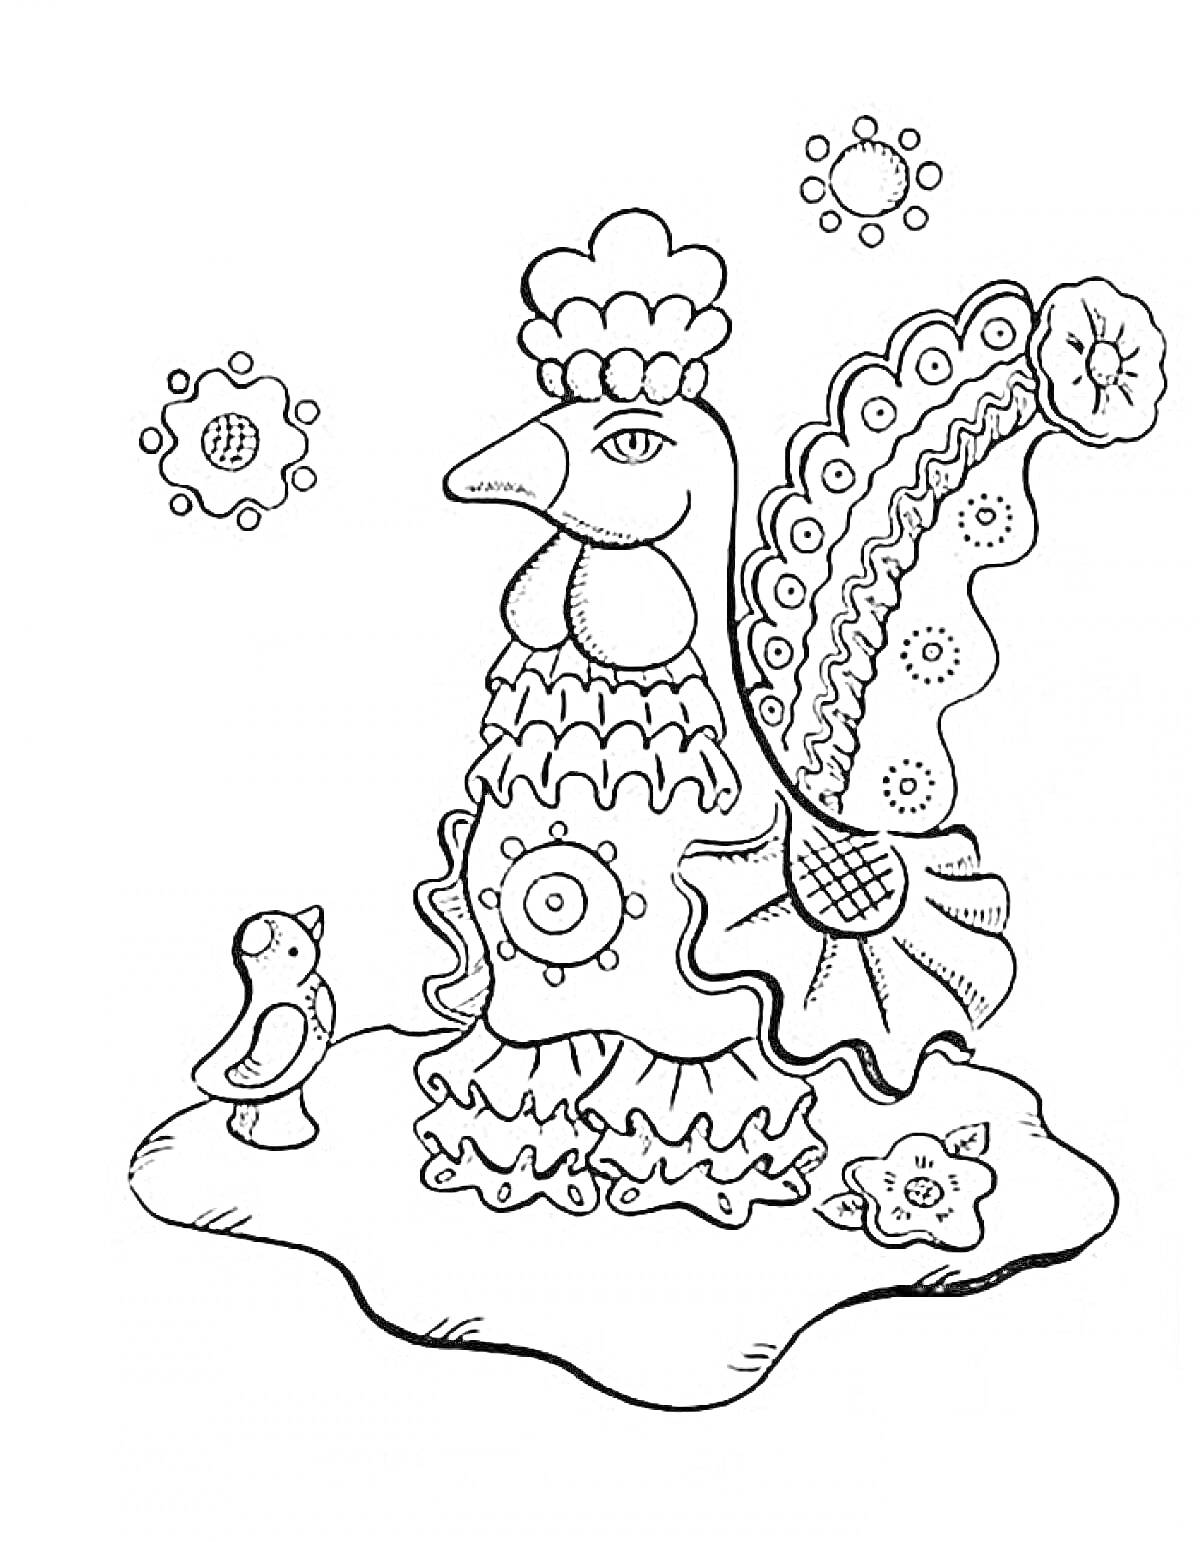 Раскраска Петух с курочкой и цветами на земле в стиле дымковской игрушки